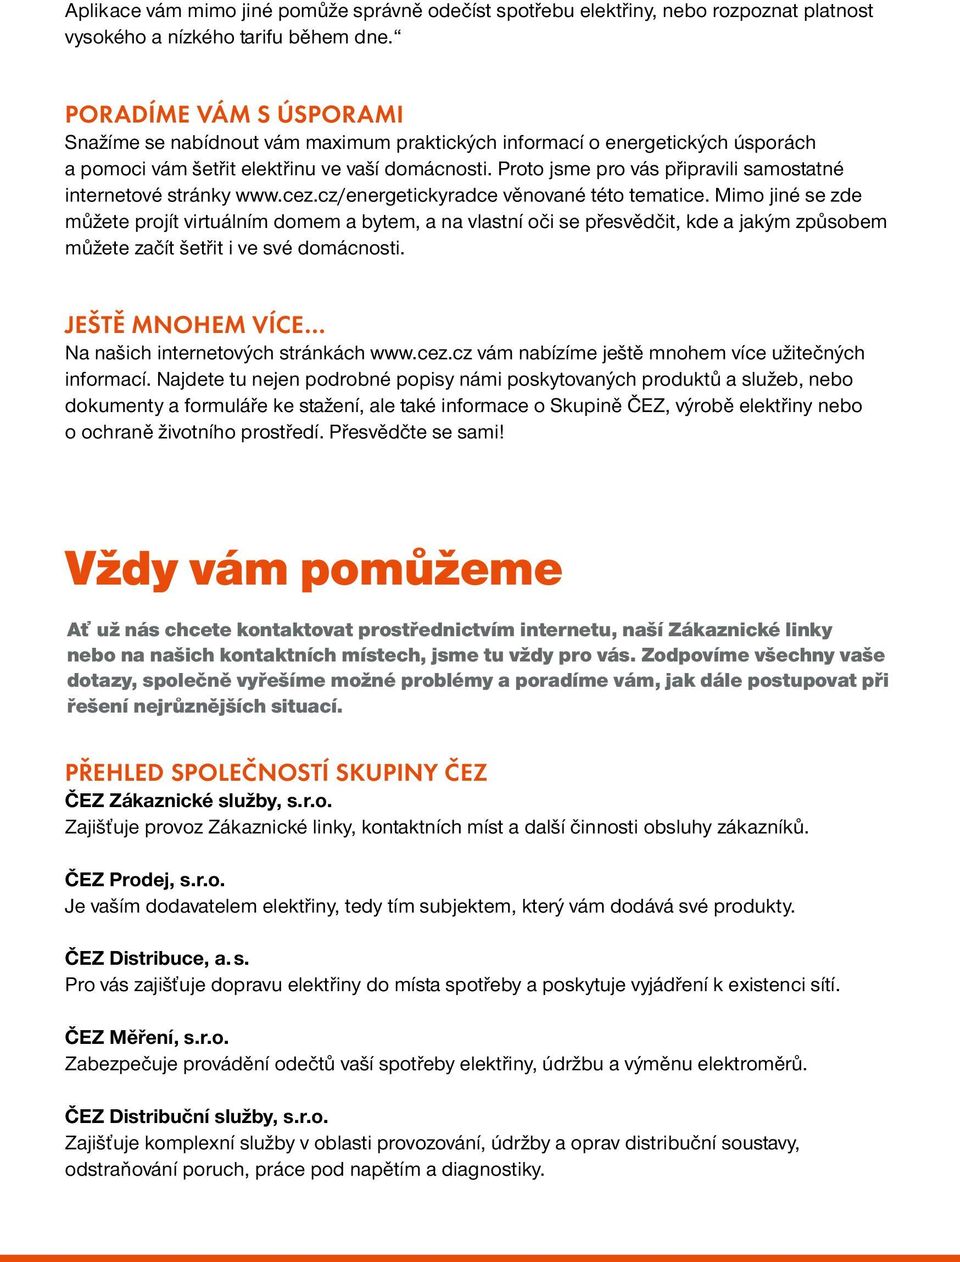 Proto jsme pro vás připravili samostatné internetové stránky www.cez.cz/energetickyradce věnované této tematice.